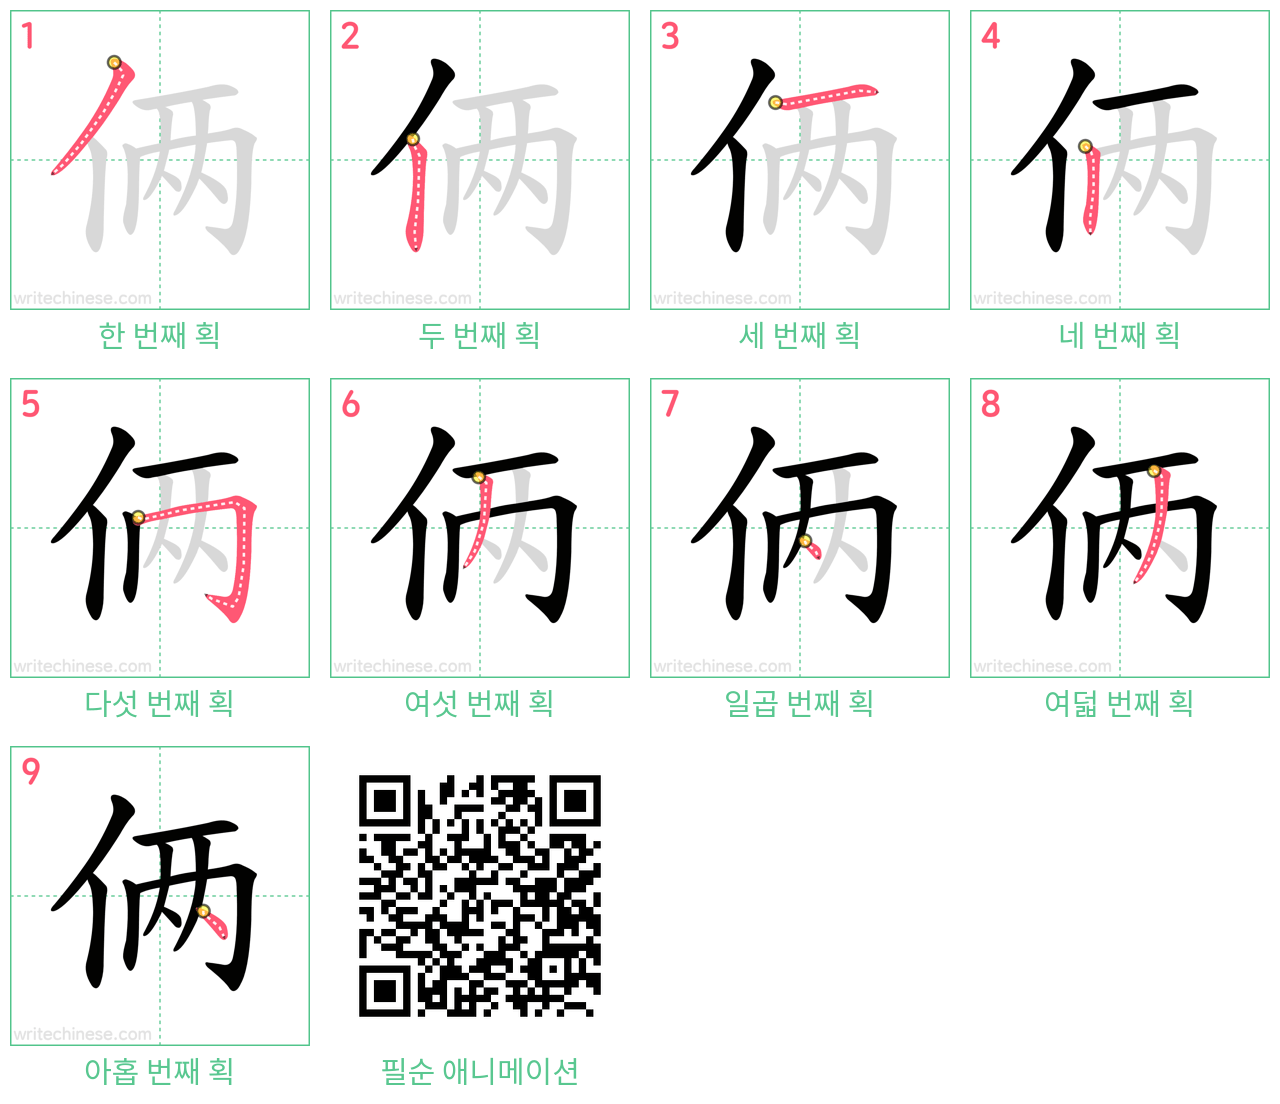 俩 step-by-step stroke order diagrams